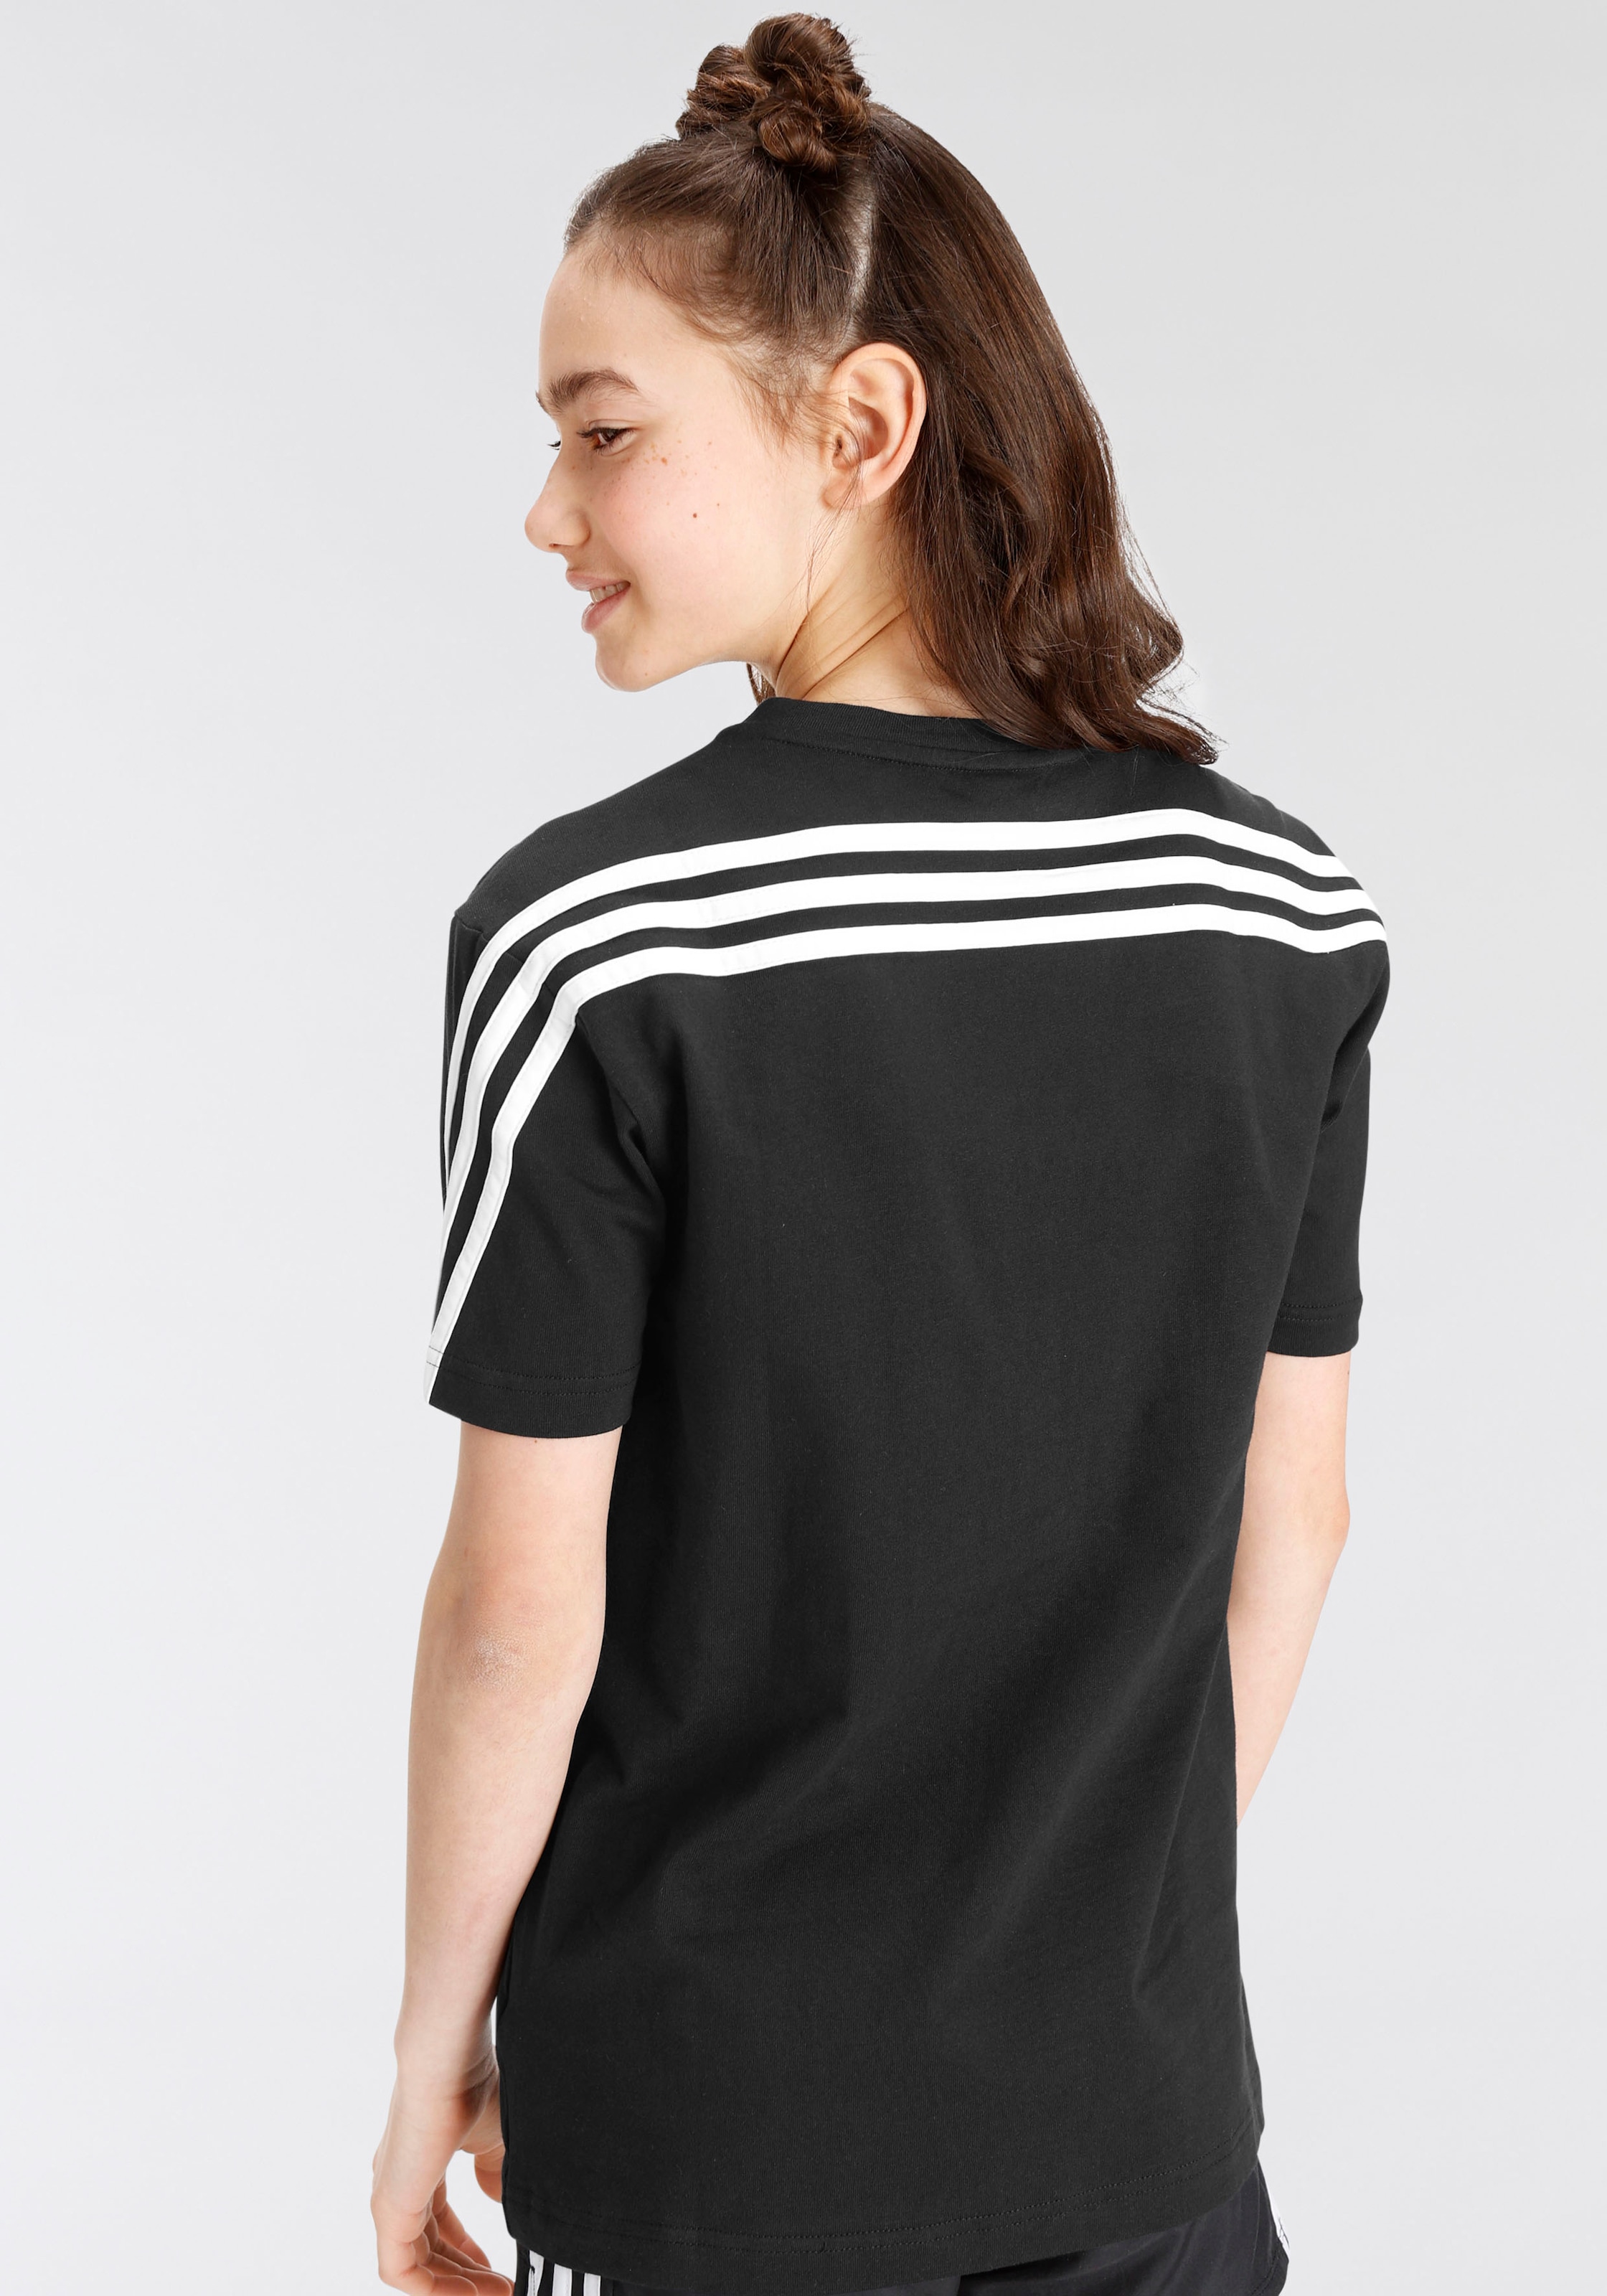 bestellen »FUTURE | Sportswear 3-STREIFEN« adidas T-Shirt BAUR ICONS online